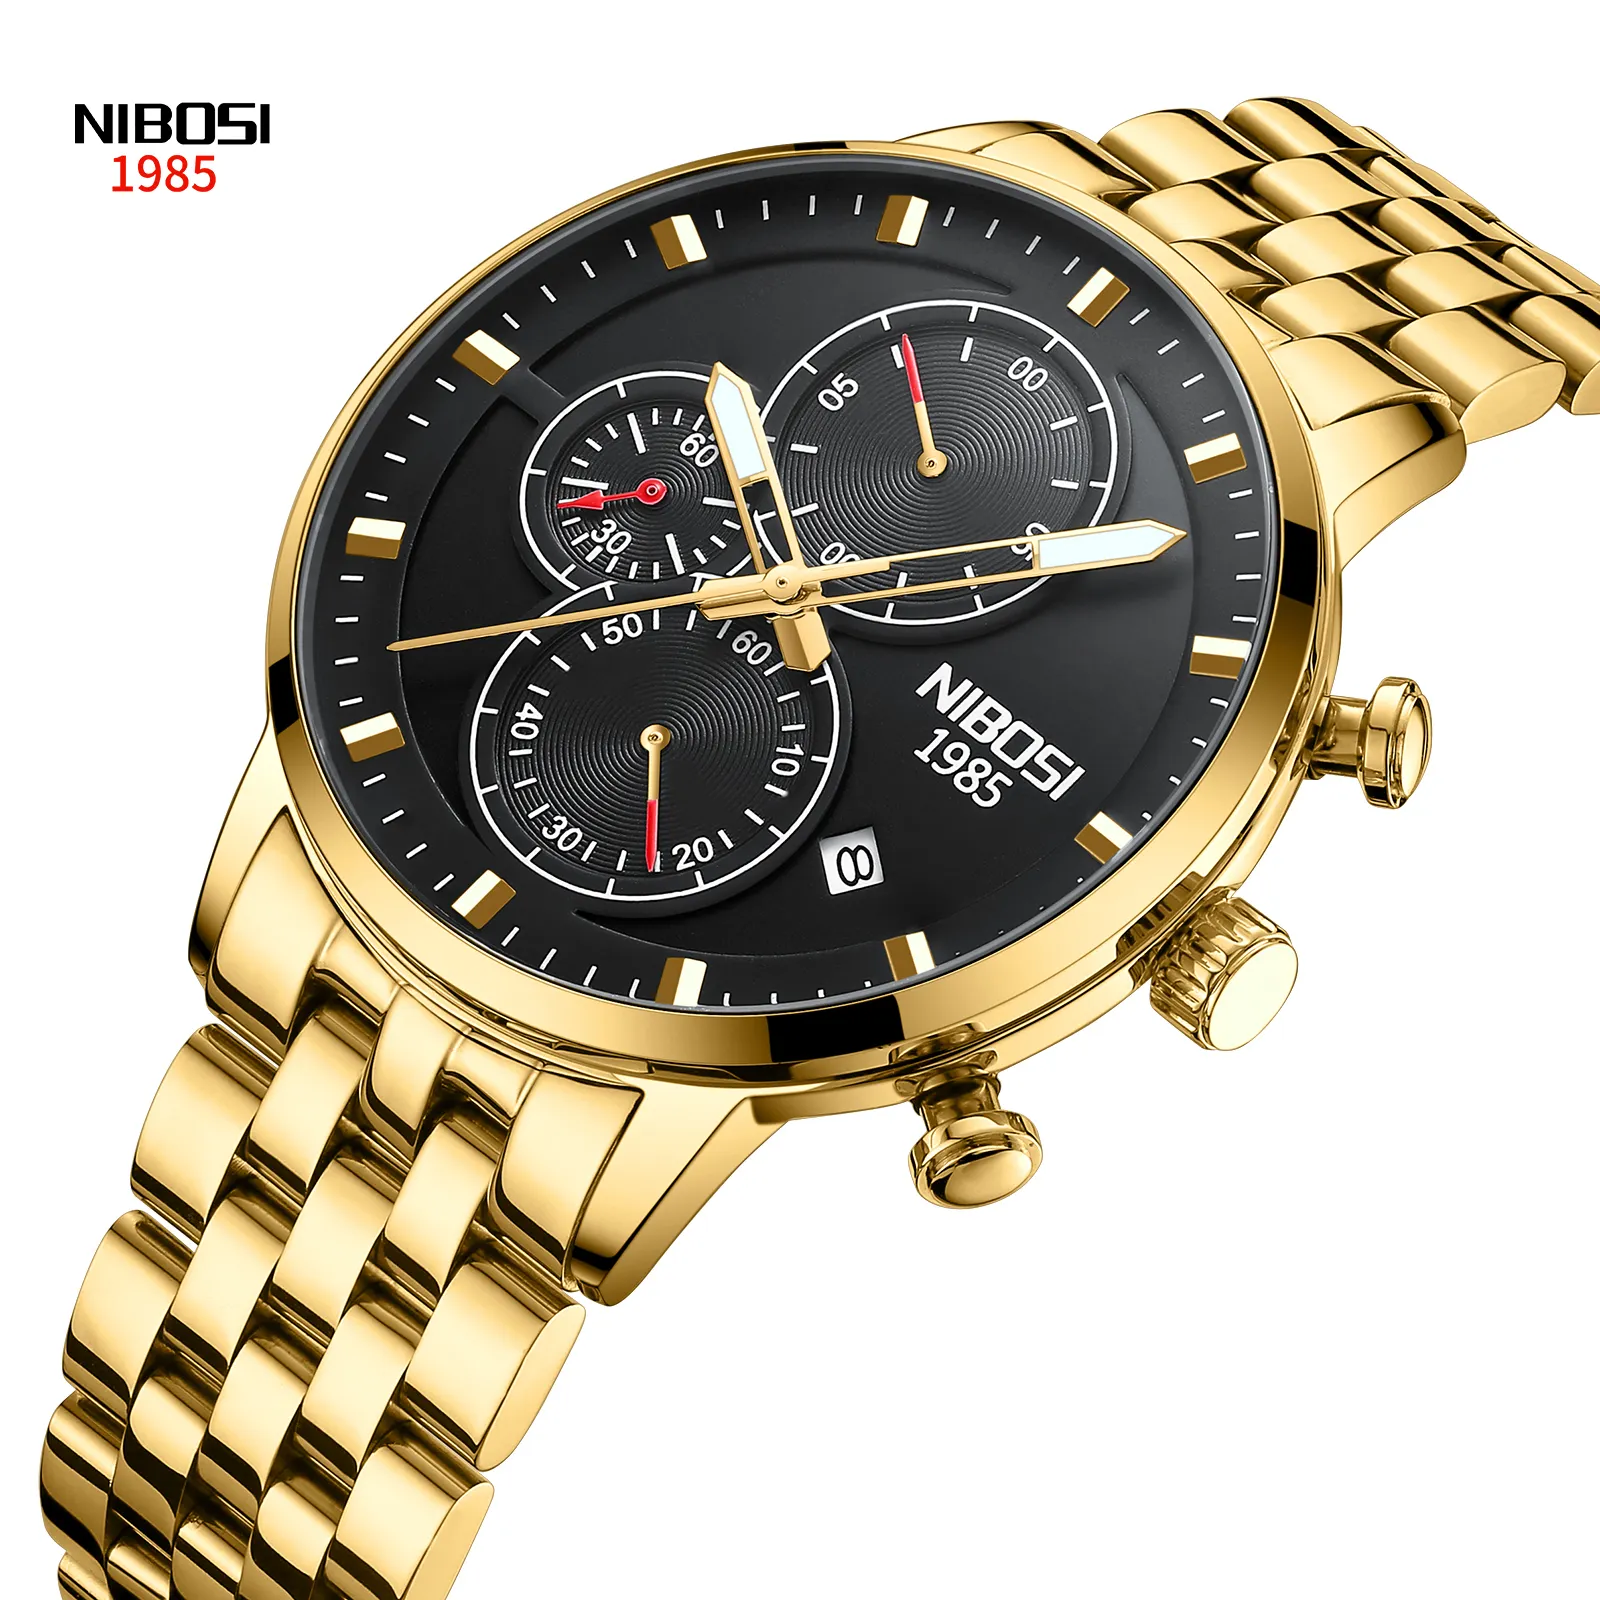 NIBOSI 2531 제조 석영 시계 브랜드 럭셔리 남자 시계 빛나는 스테인레스 스틸 손목 시계